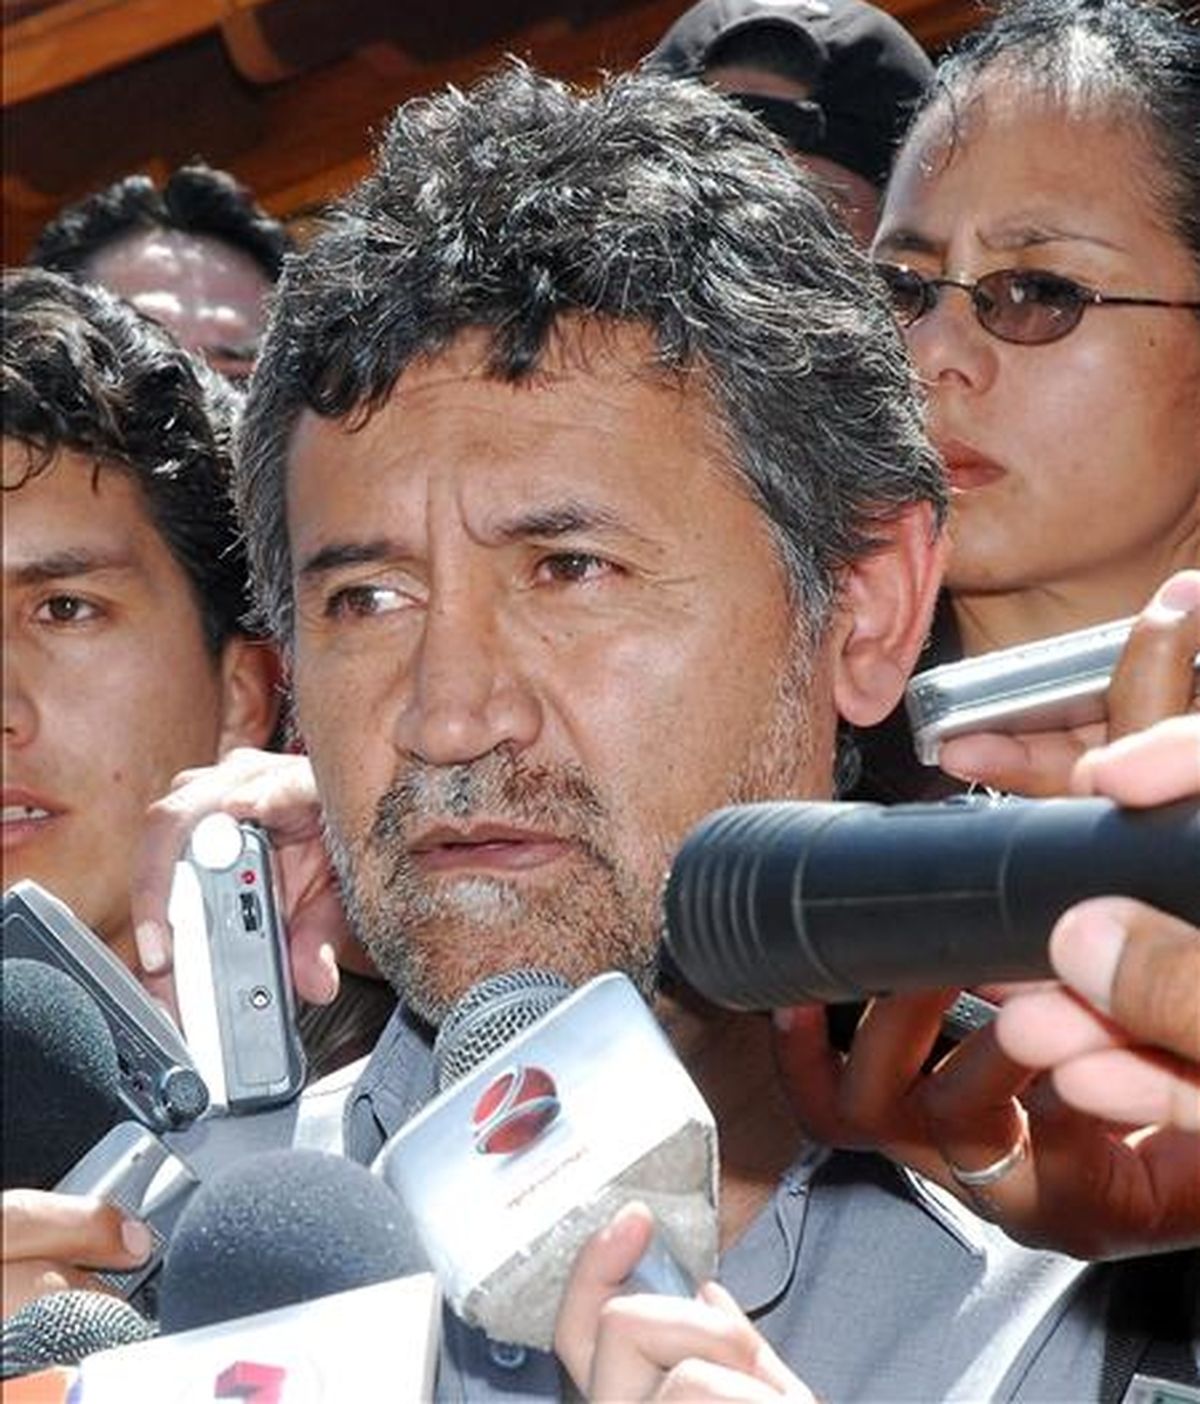 En una conferencia de prensa, el portavoz presidencial, Iván Canelas, responsabilizó al Ejecutivo peruano de los problemas diplomáticos entre los dos países andinos, por su actitud de "abierta provocación" hacia Bolivia. EFE/Archivo